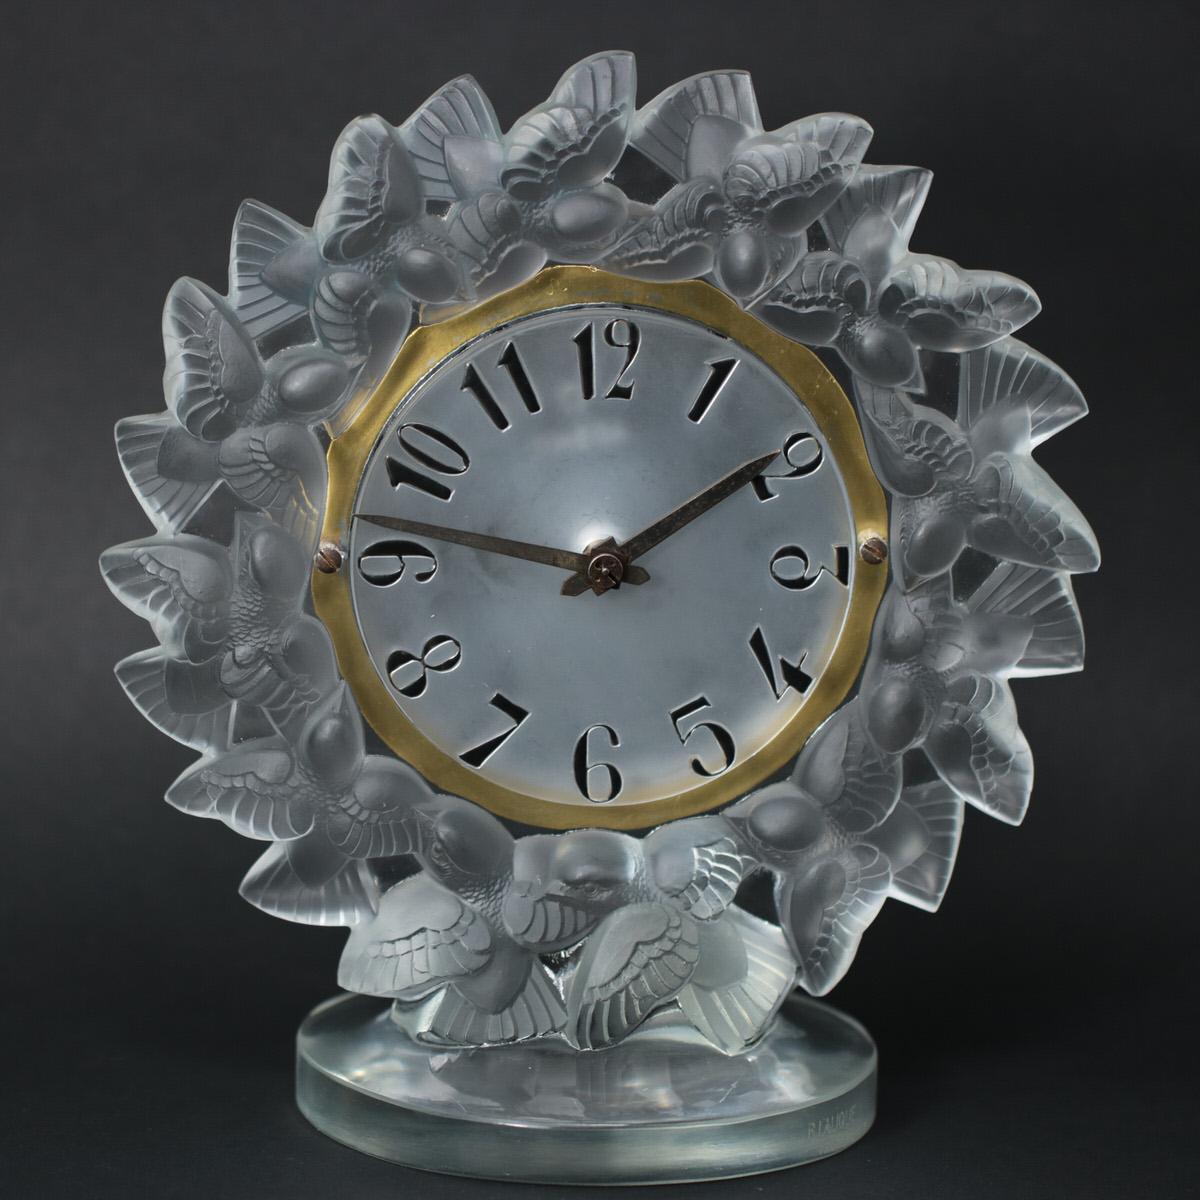 René Lalique Uhr 'Roitelets' aus mattiertem Glas. Dieses Design zeigt einen Ring von fliegenden Vögeln (Zaunkönigen) um das Zifferblatt. Die Ziffern auf dem Ziffernblatt sind aus Glas geformt und mit schwarzer Emaille bemalt. Eingravierte